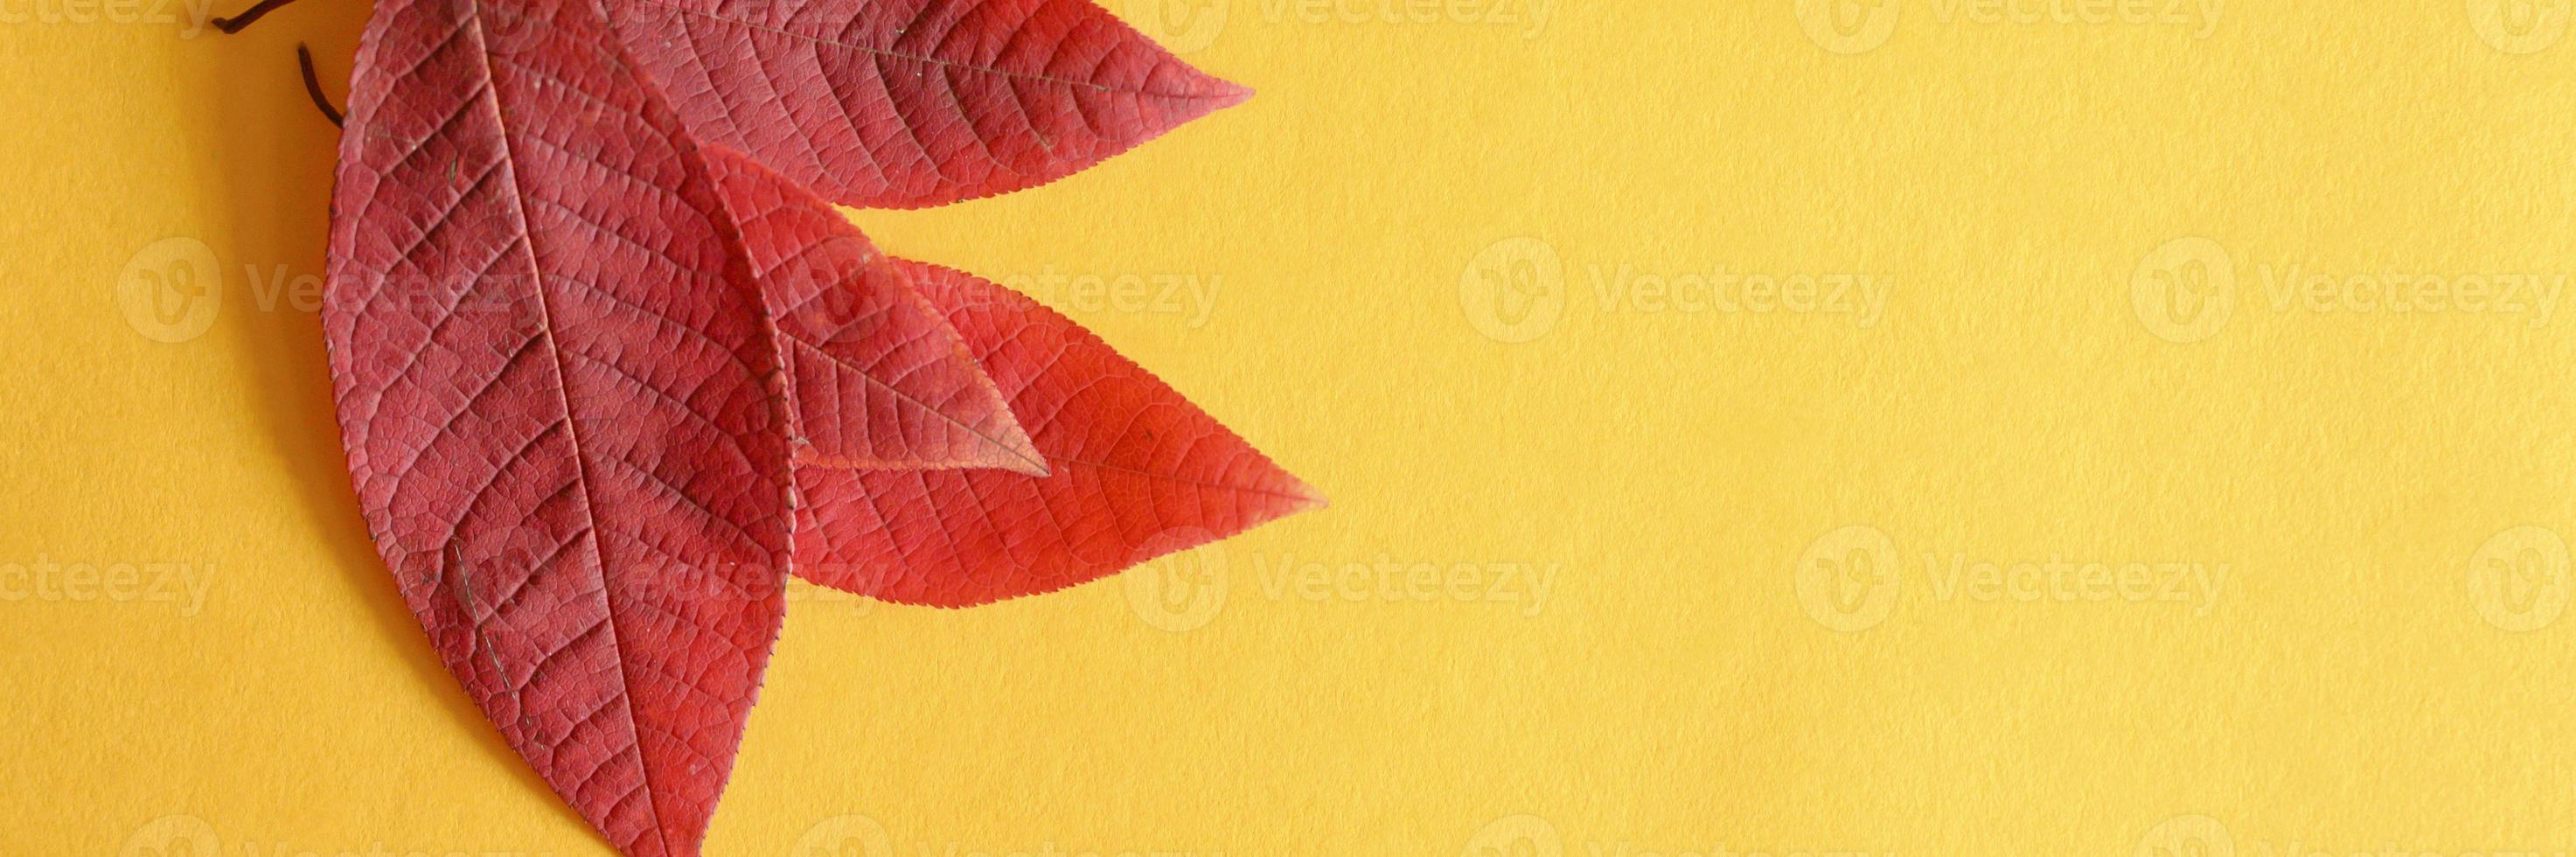 verschillende rode gevallen kersen herfstbladeren op een geel papier achtergrond plat leggen foto